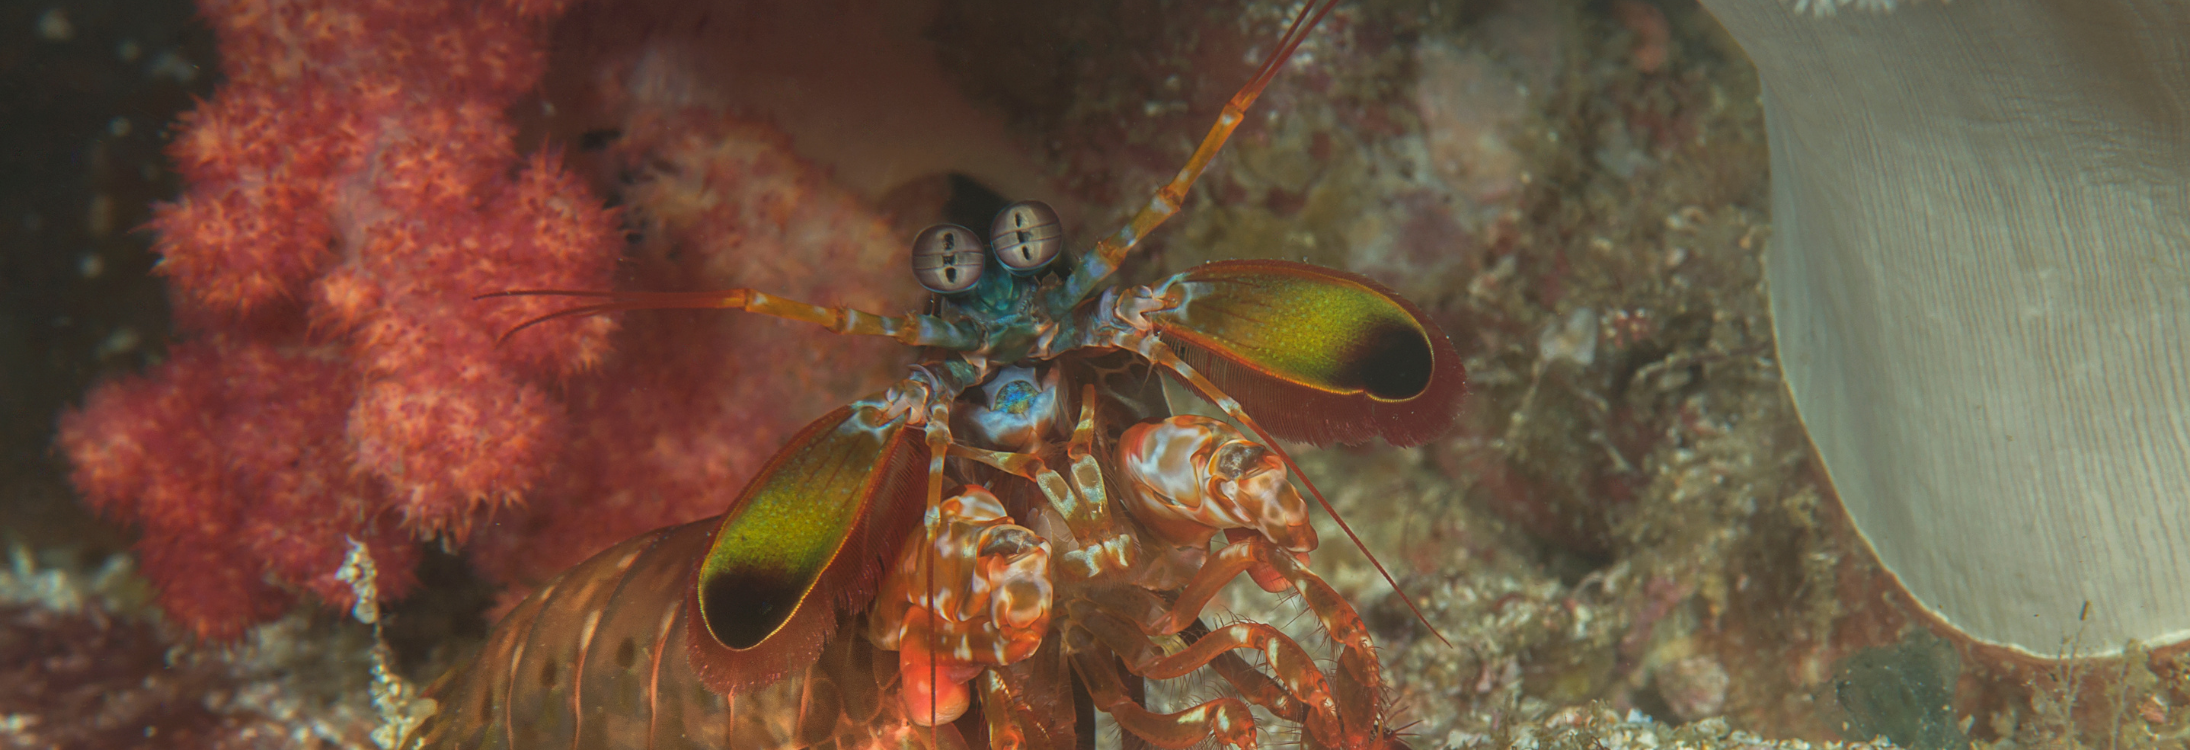 Mantis shrimp in a bubble coral